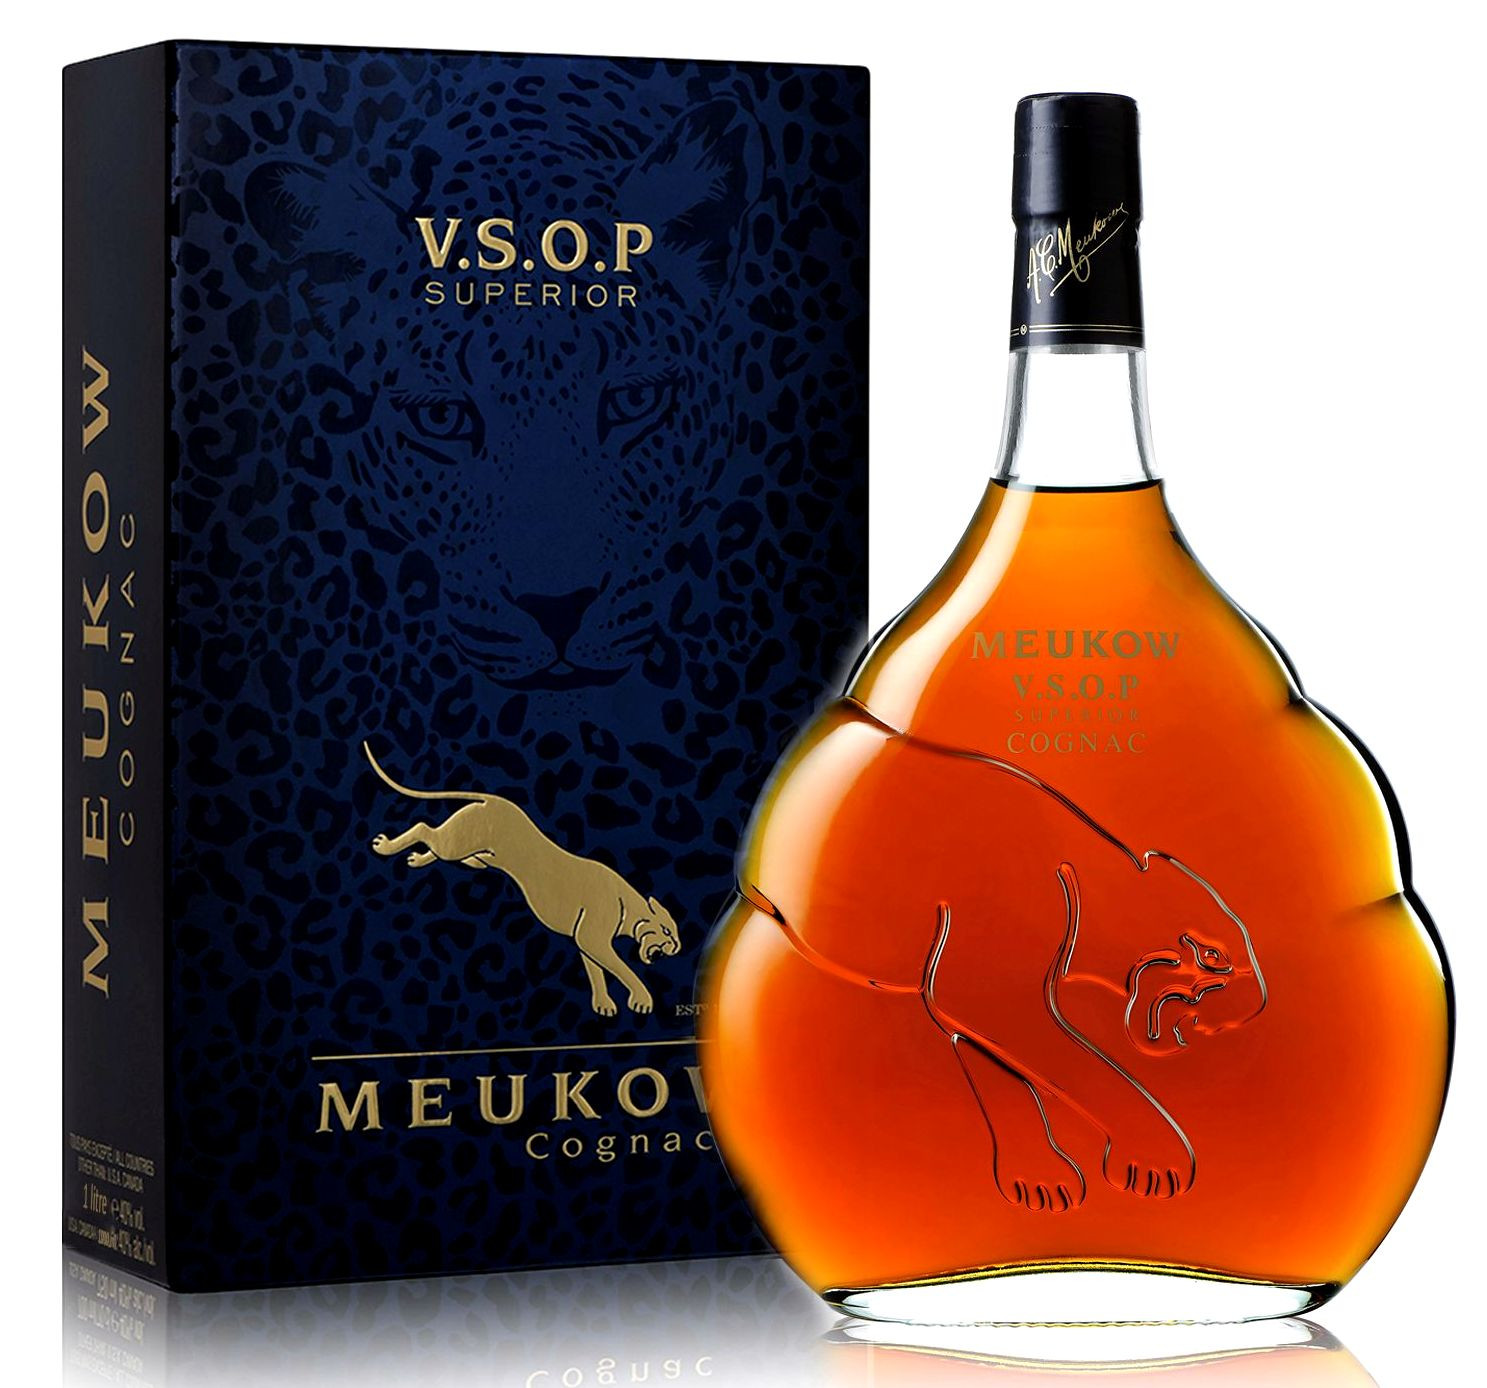 Meukow VSOP Cognac Pdd. 0.7l